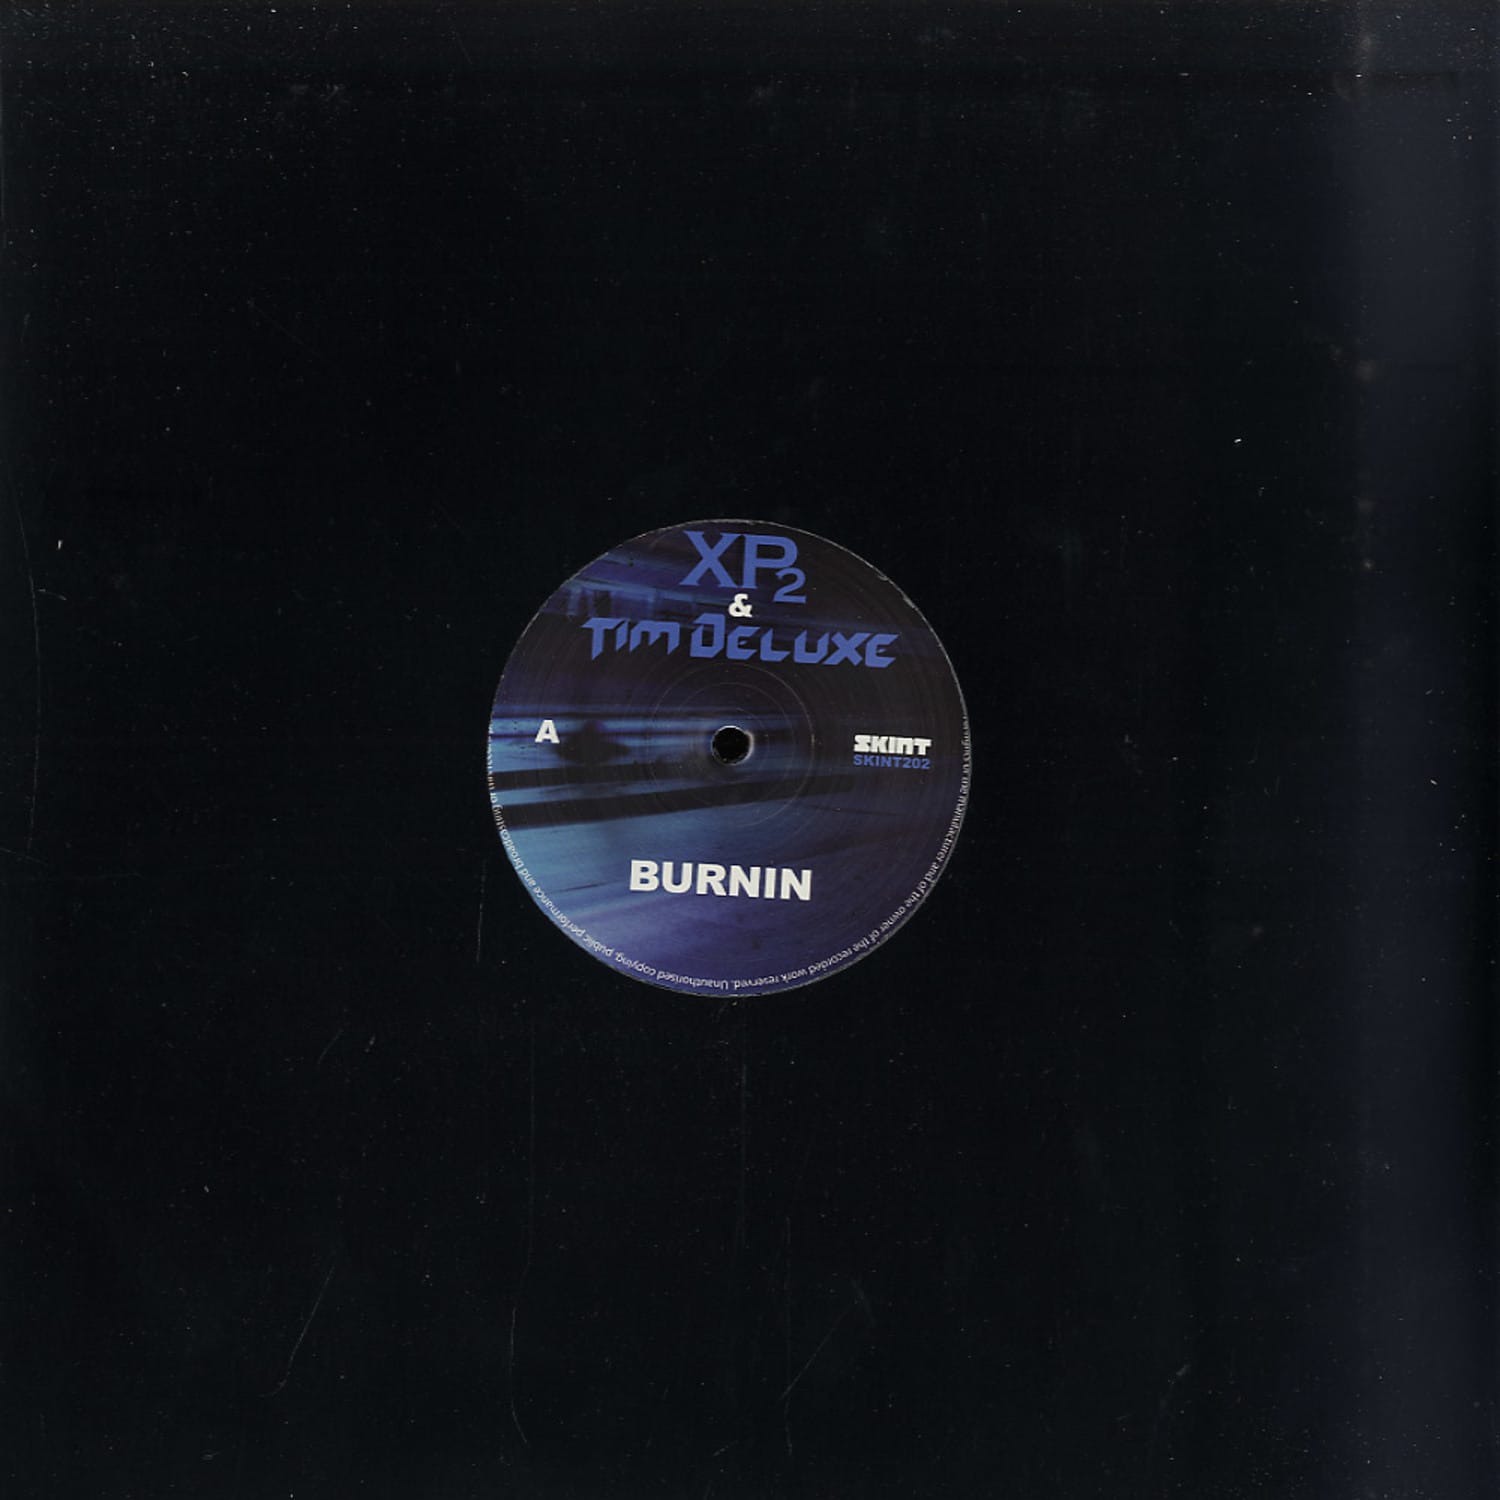 XP2 & Tim Deluxe - BURNIN / MADE IN SOHO